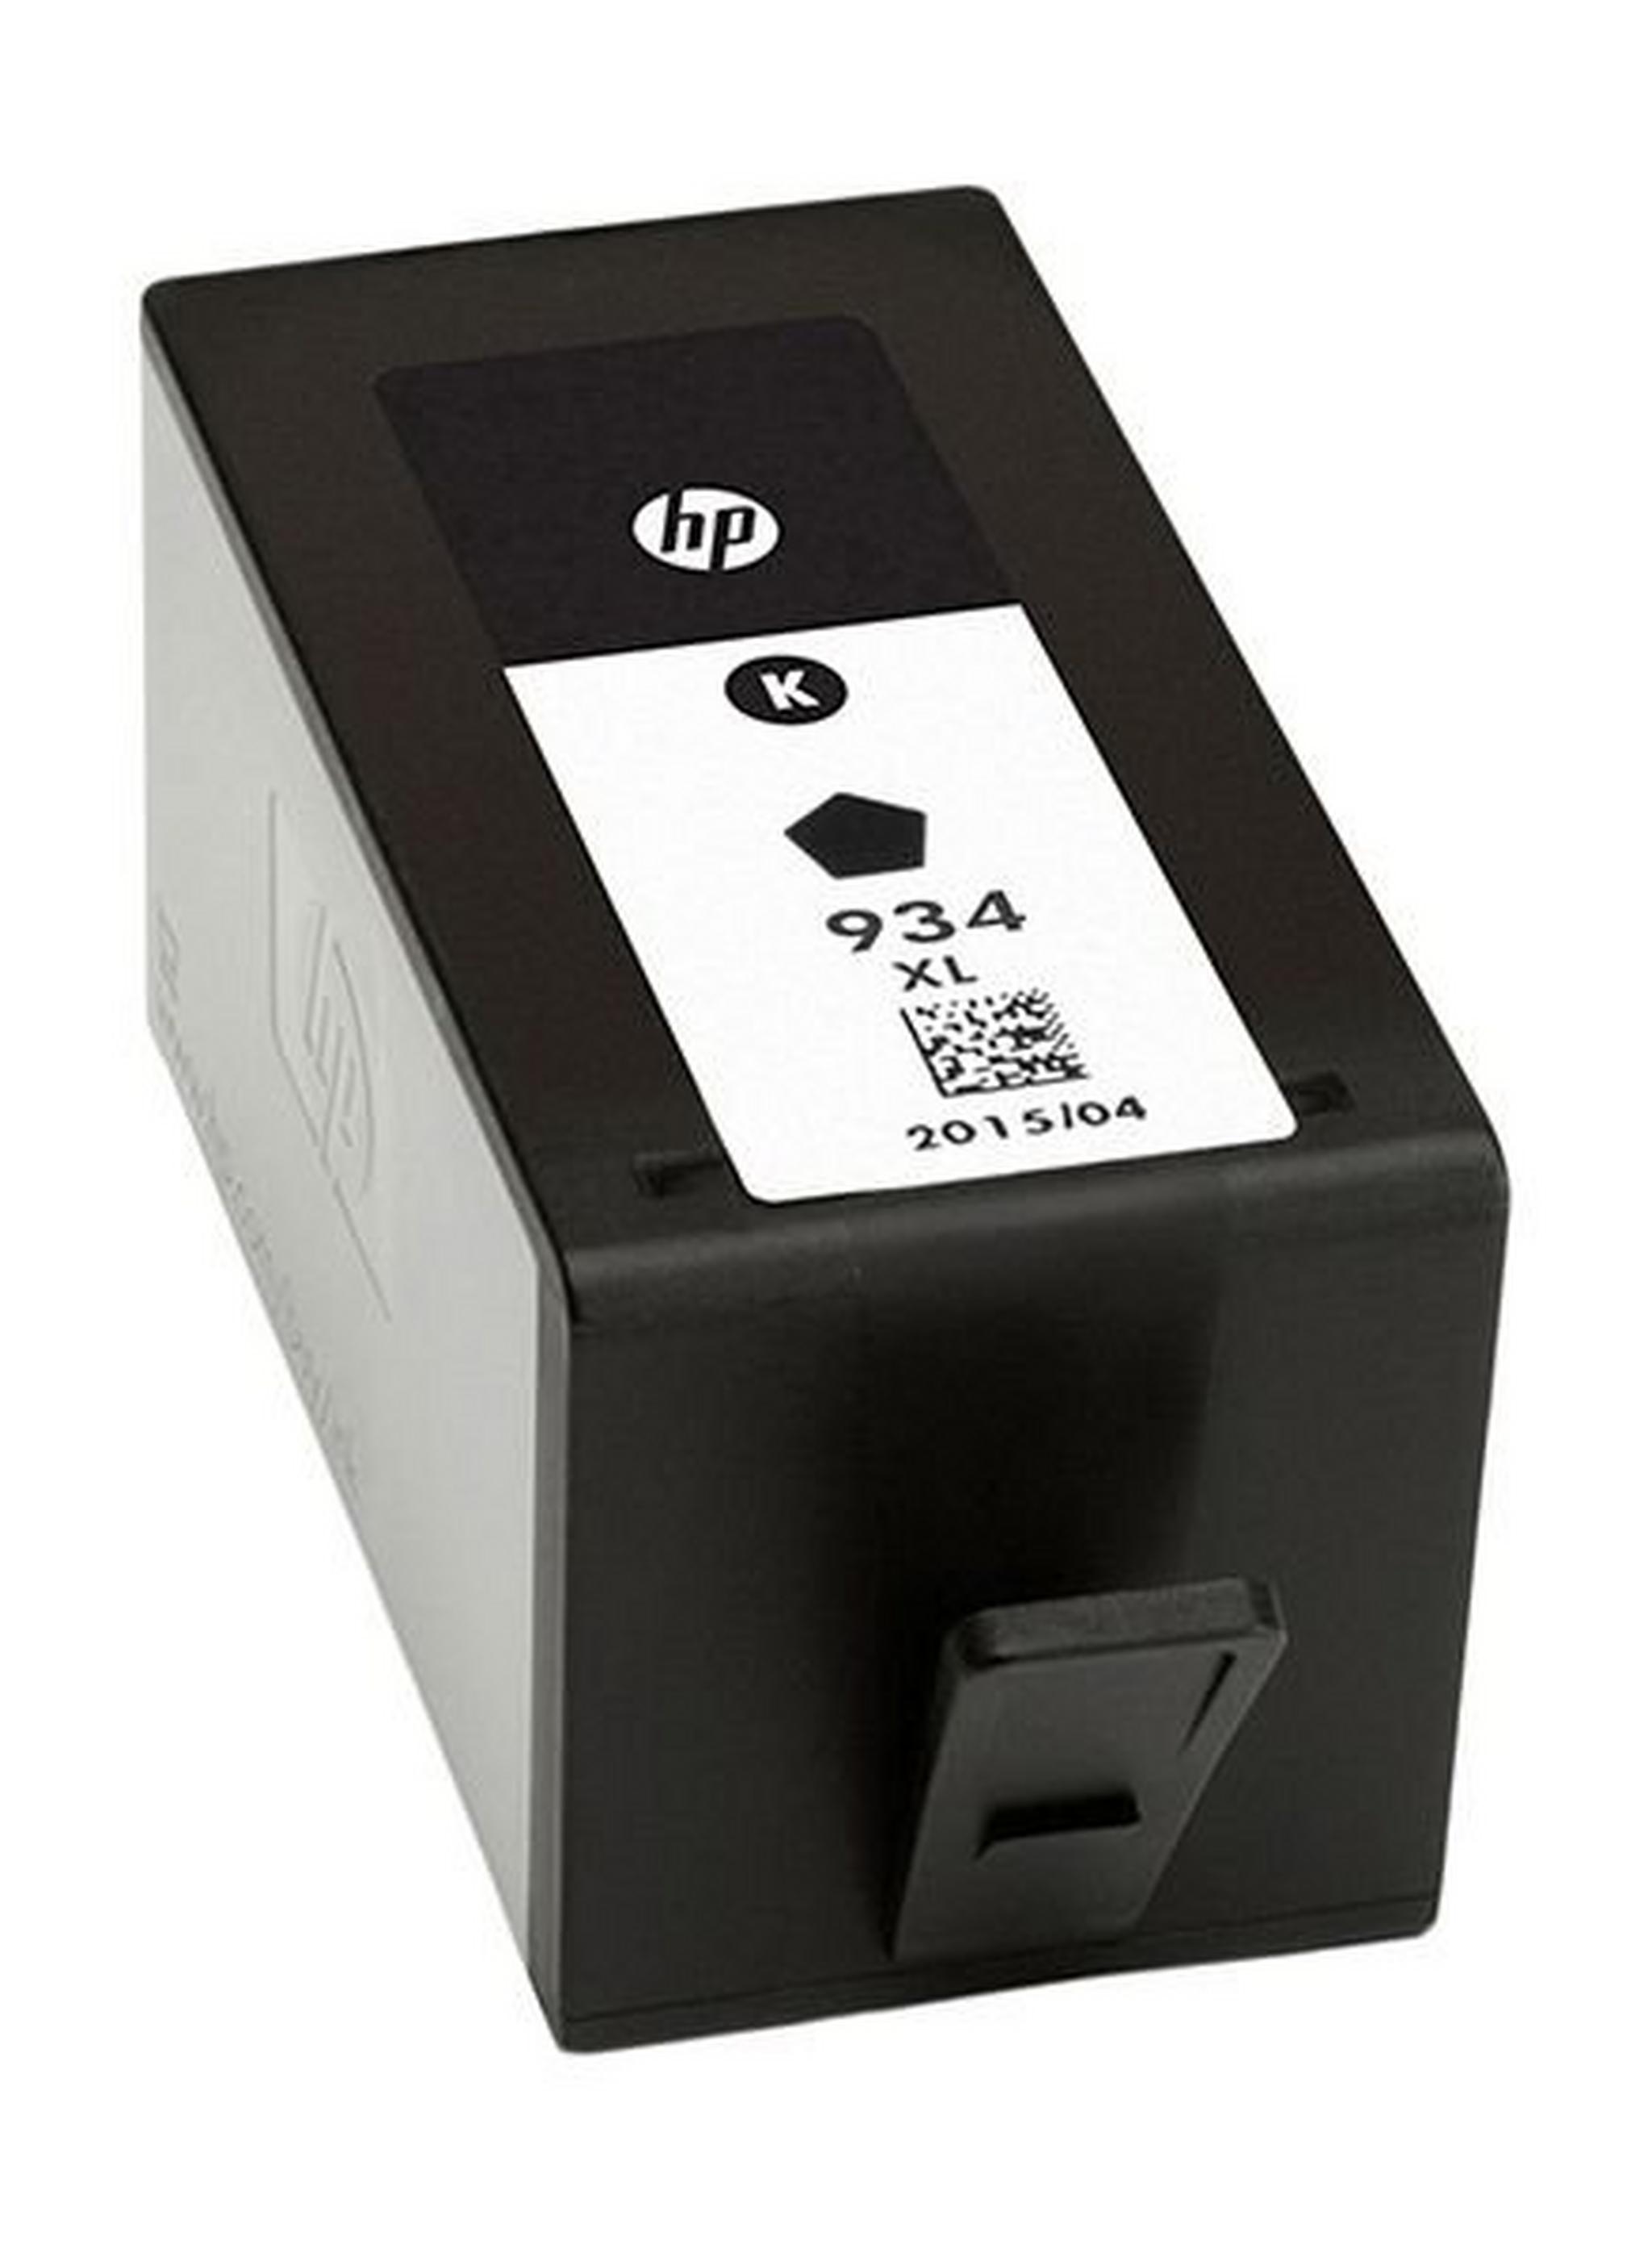 HP Ink 934XL Black Ink